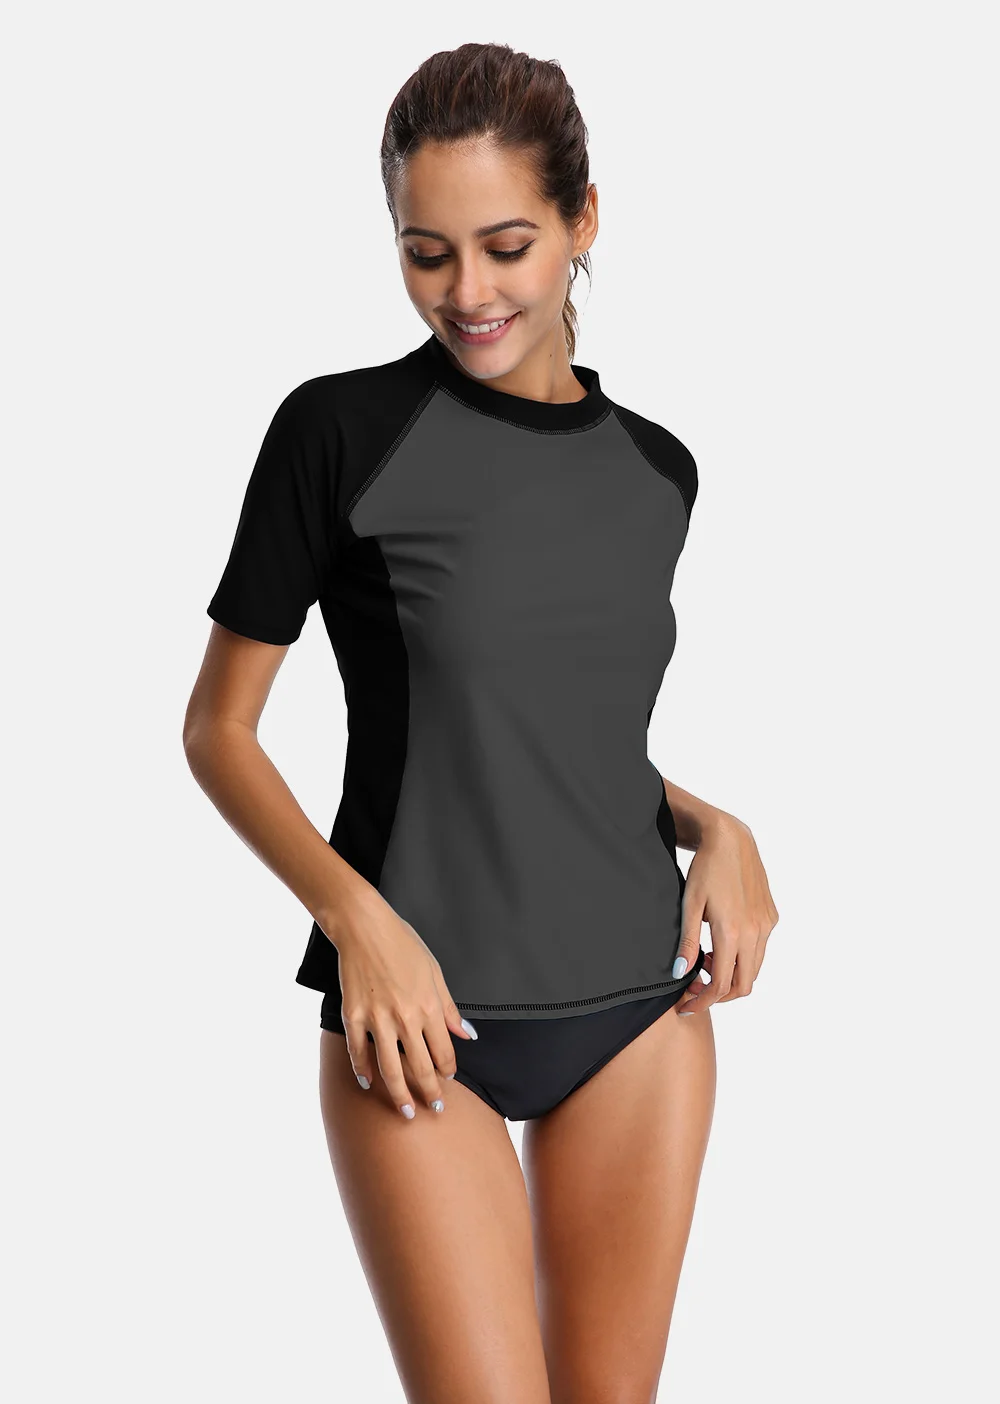 Женский короткий рукав Rashguard гидрокуртки купальные костюмы топ UPF 50+ рубашка для бега езда на велосипеде Рубашки купальник